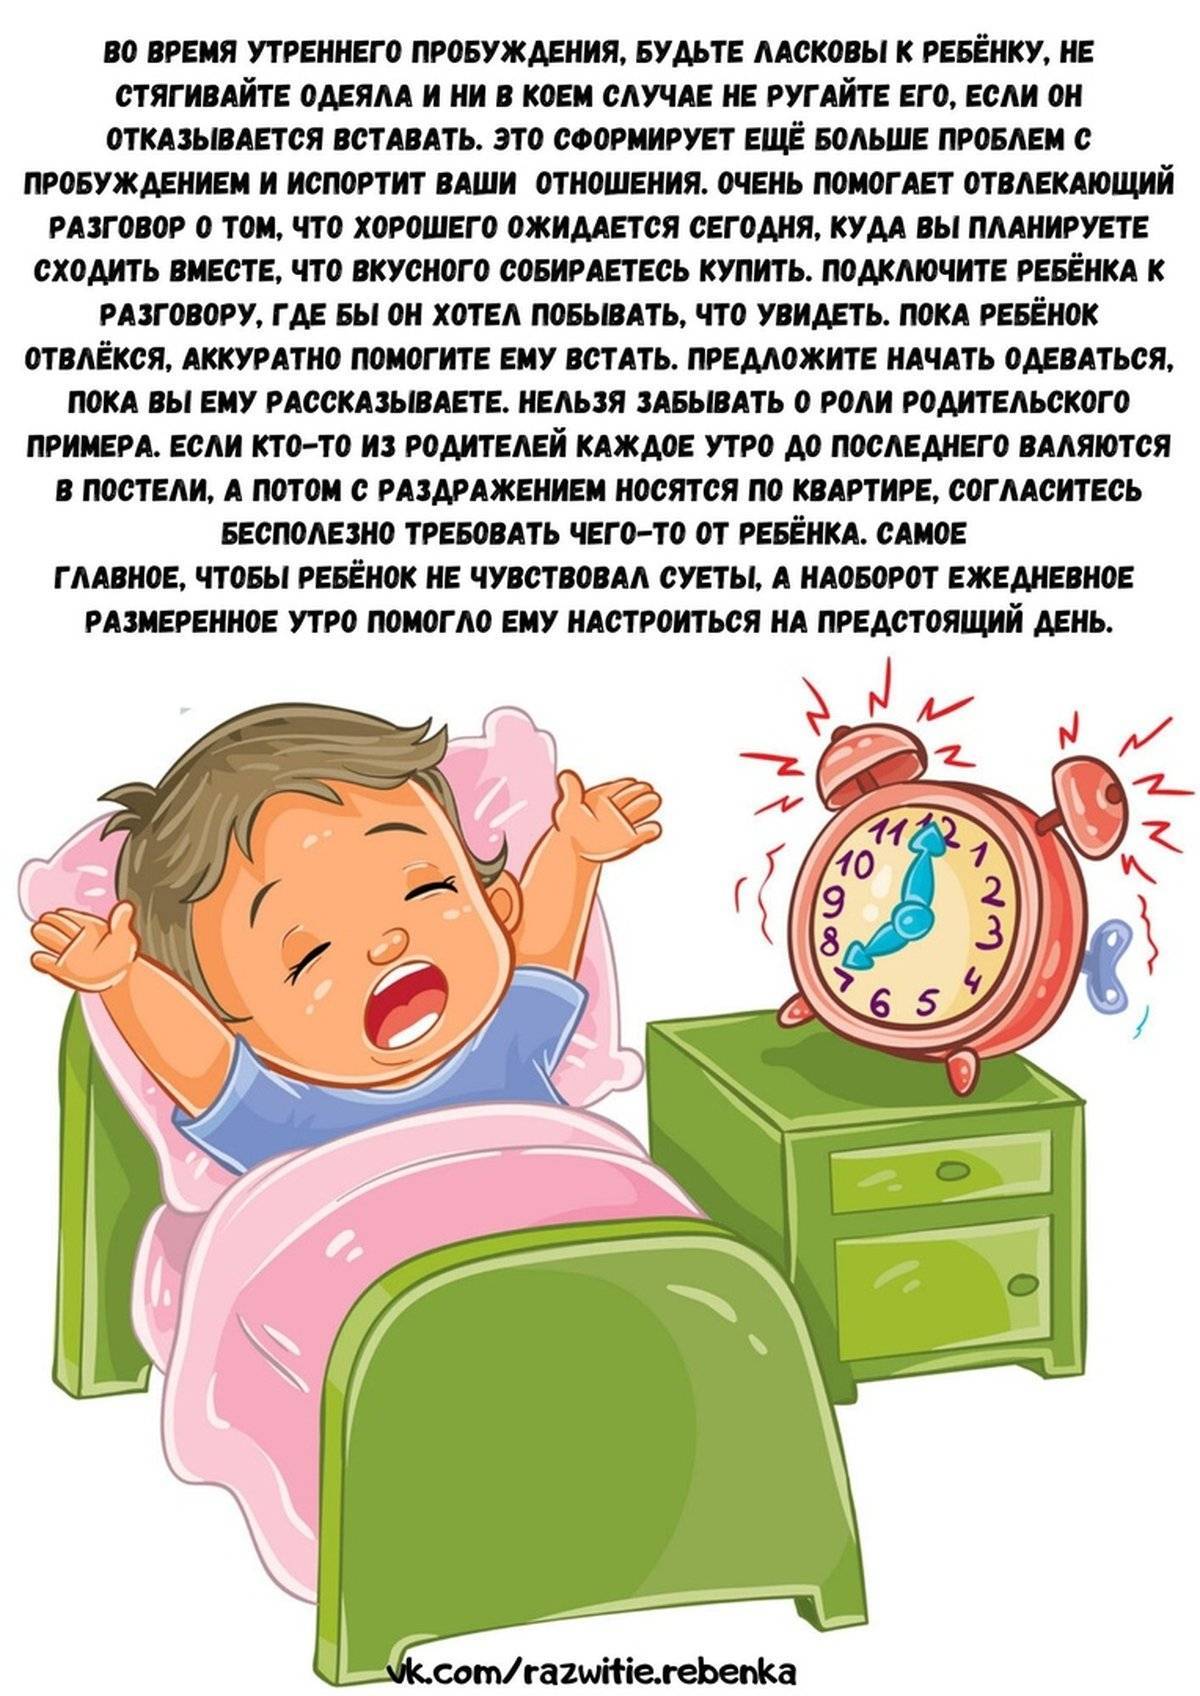 Как разбудить ребёнка правильно: действенные советы и рекомендации